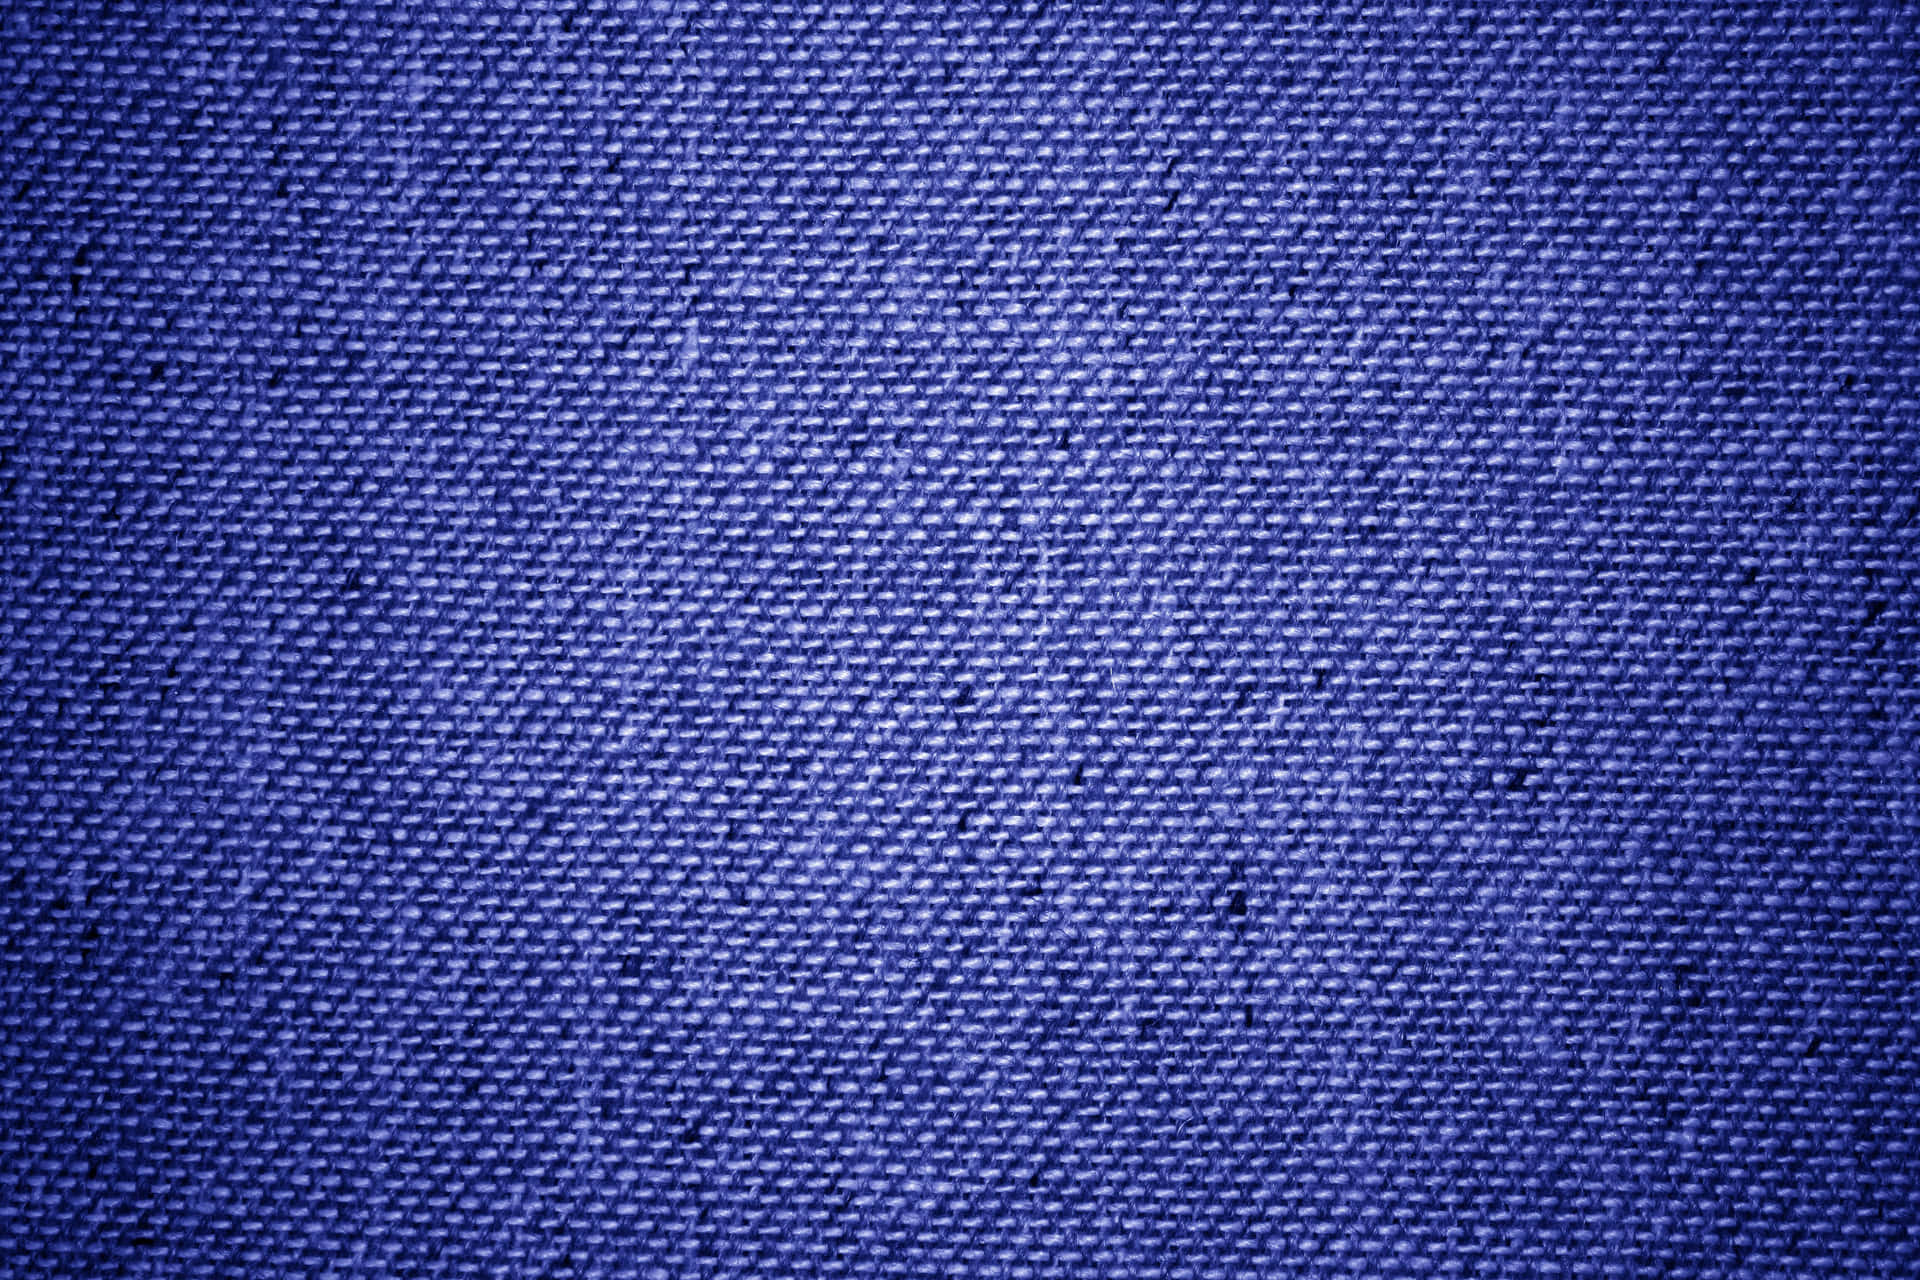 Fabric Texture Pictures Blue Denim